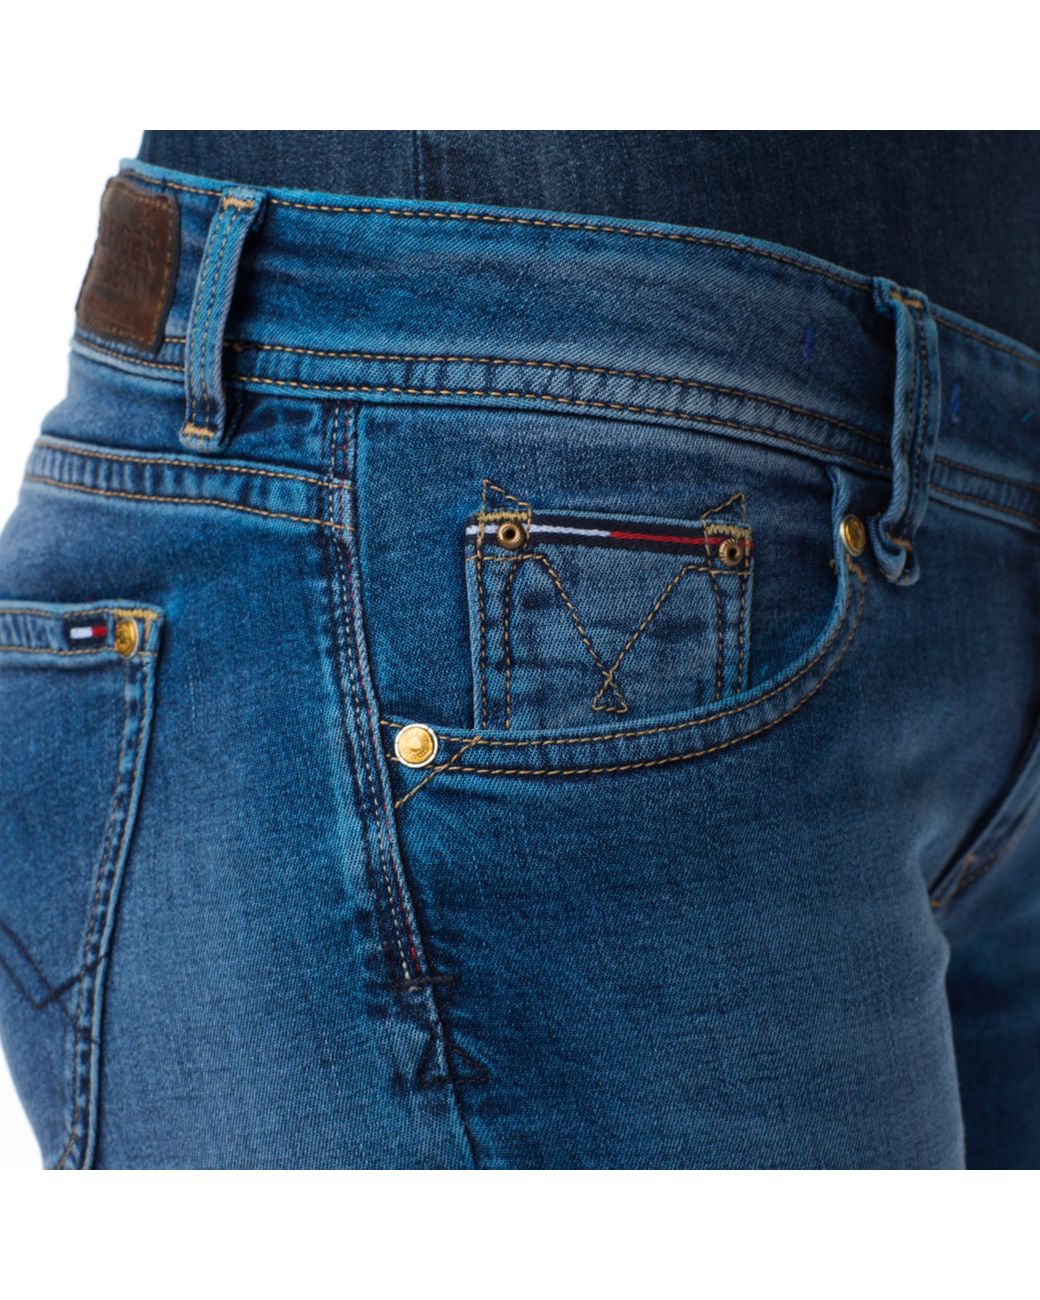 إكليل كيف تستعمل سيرينا احضر فاصوليا منظف hilfiger suzzy jeans - elkoinc.com